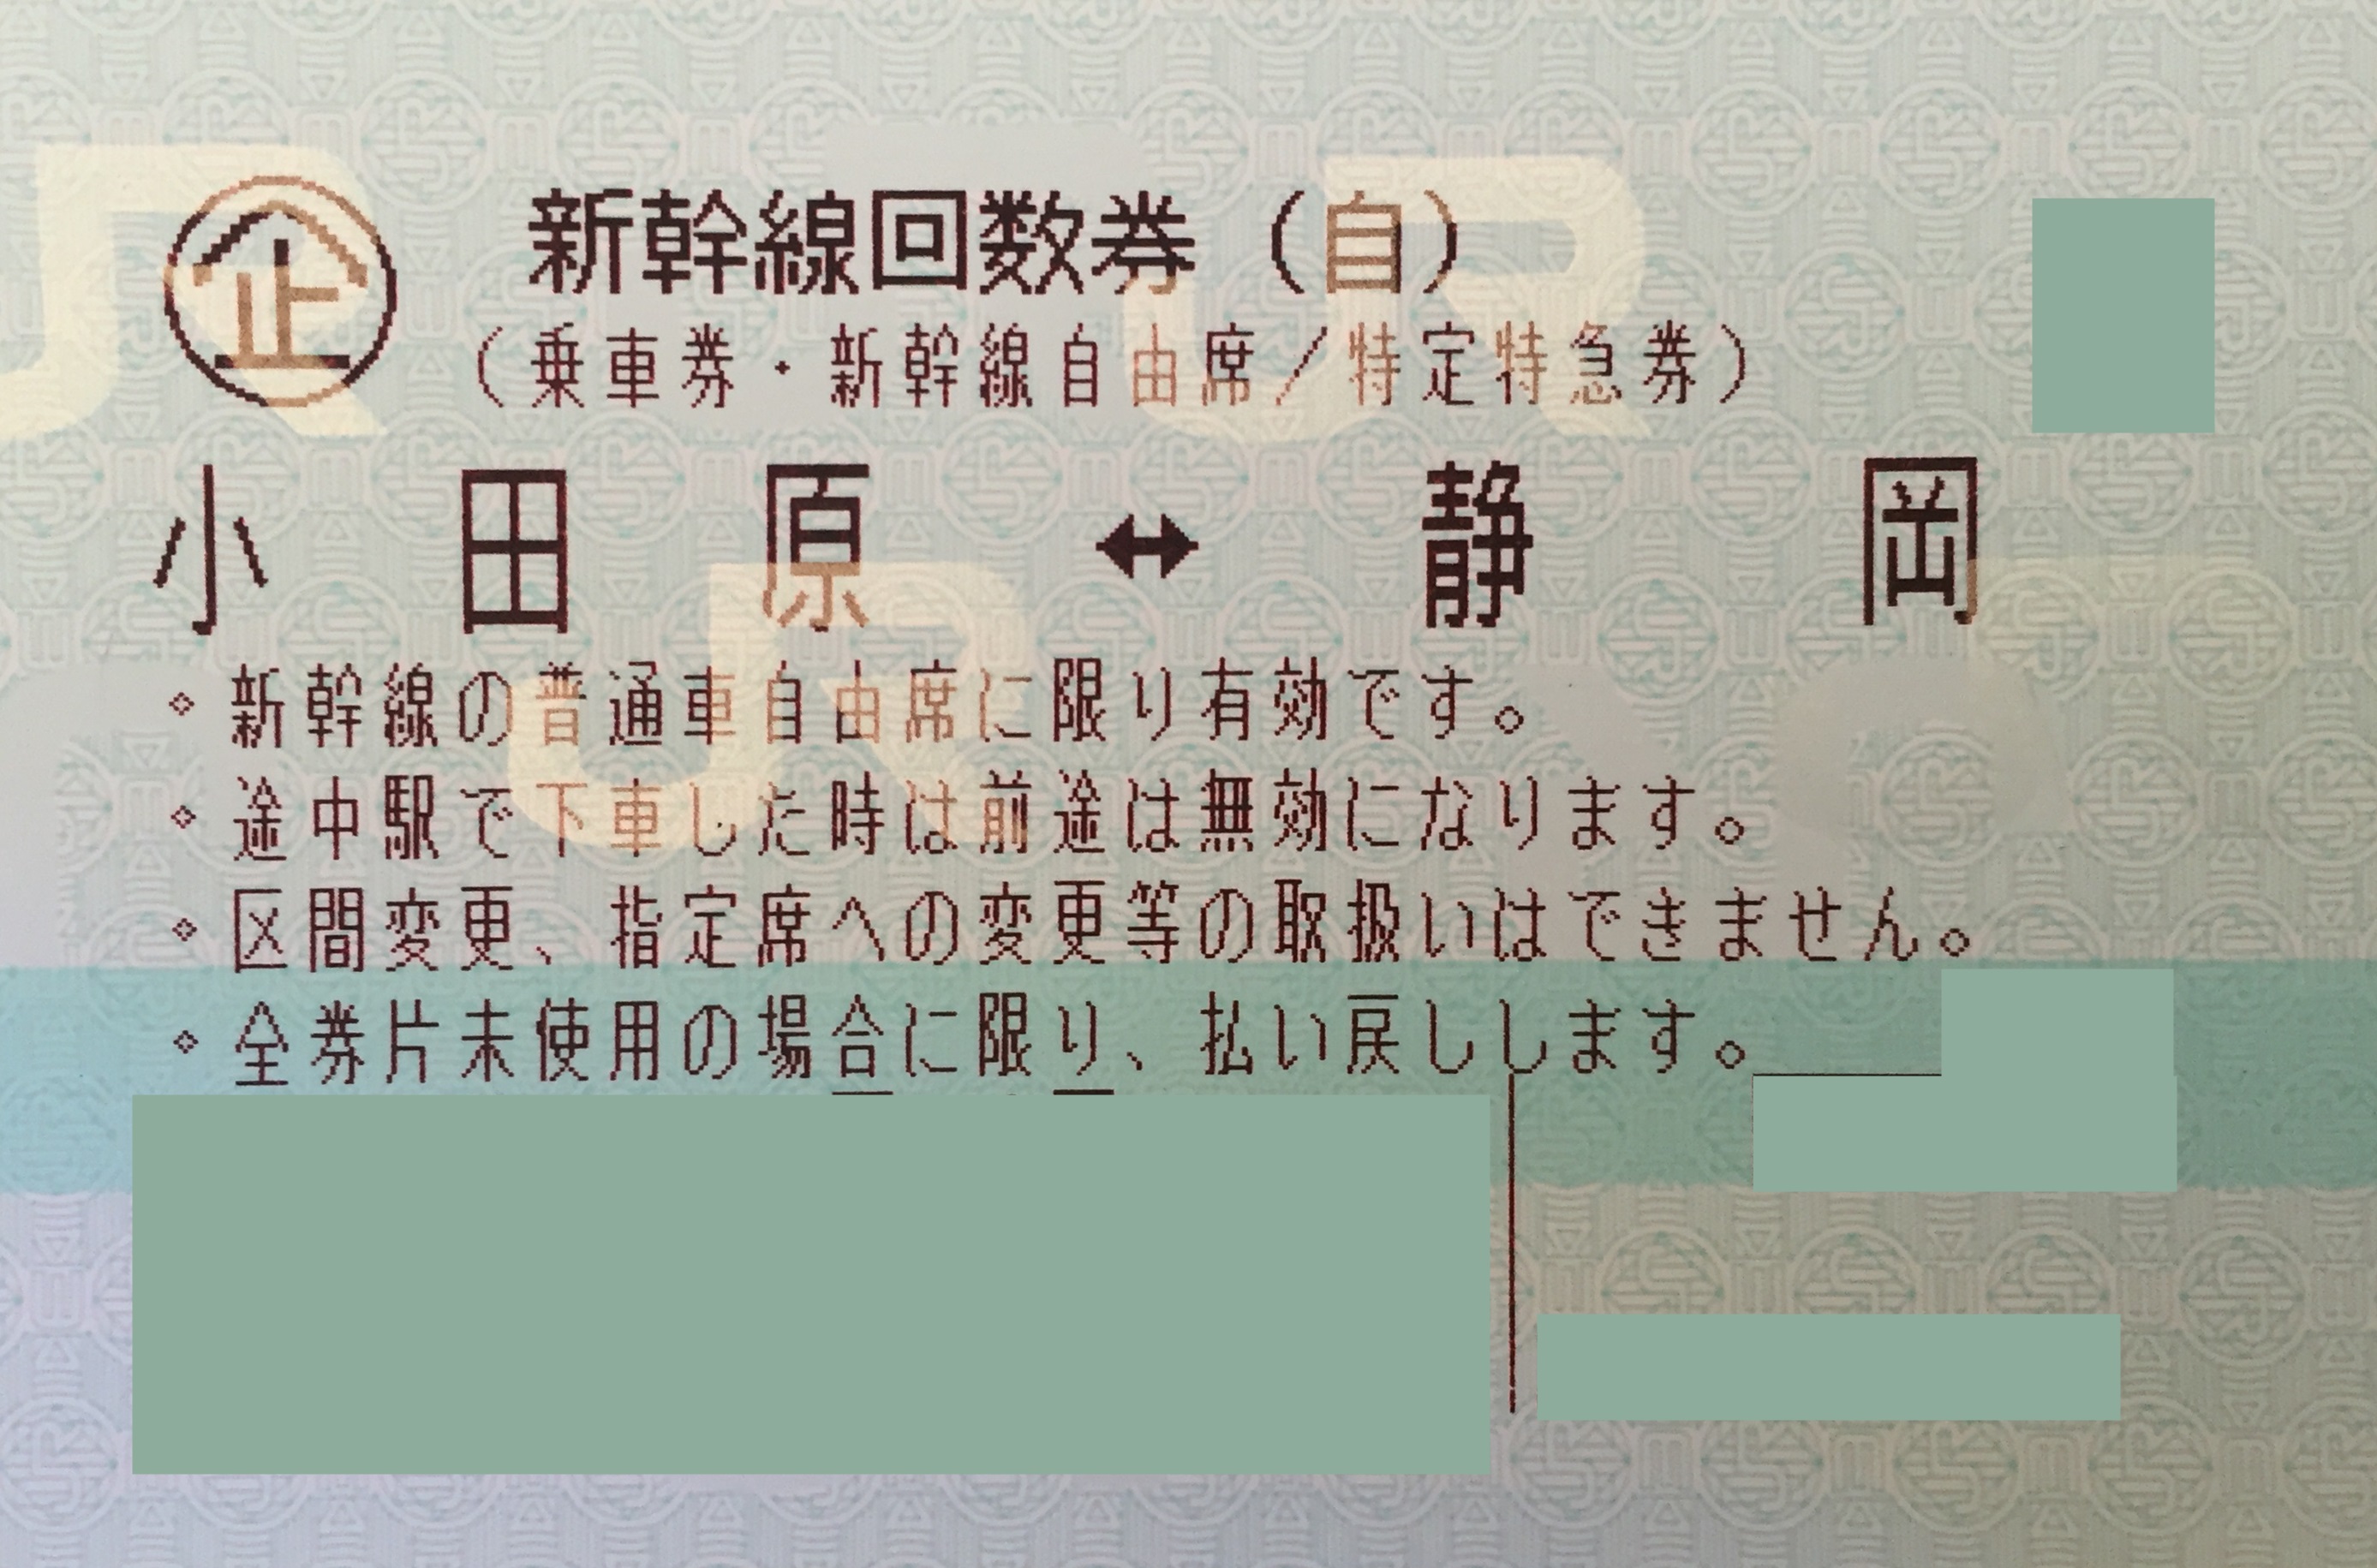 小田原-静岡 新幹線自由席回数券(東海道新幹線) | 新幹線回数券の格安チケット購入なら金券ショップチケットレンジャー